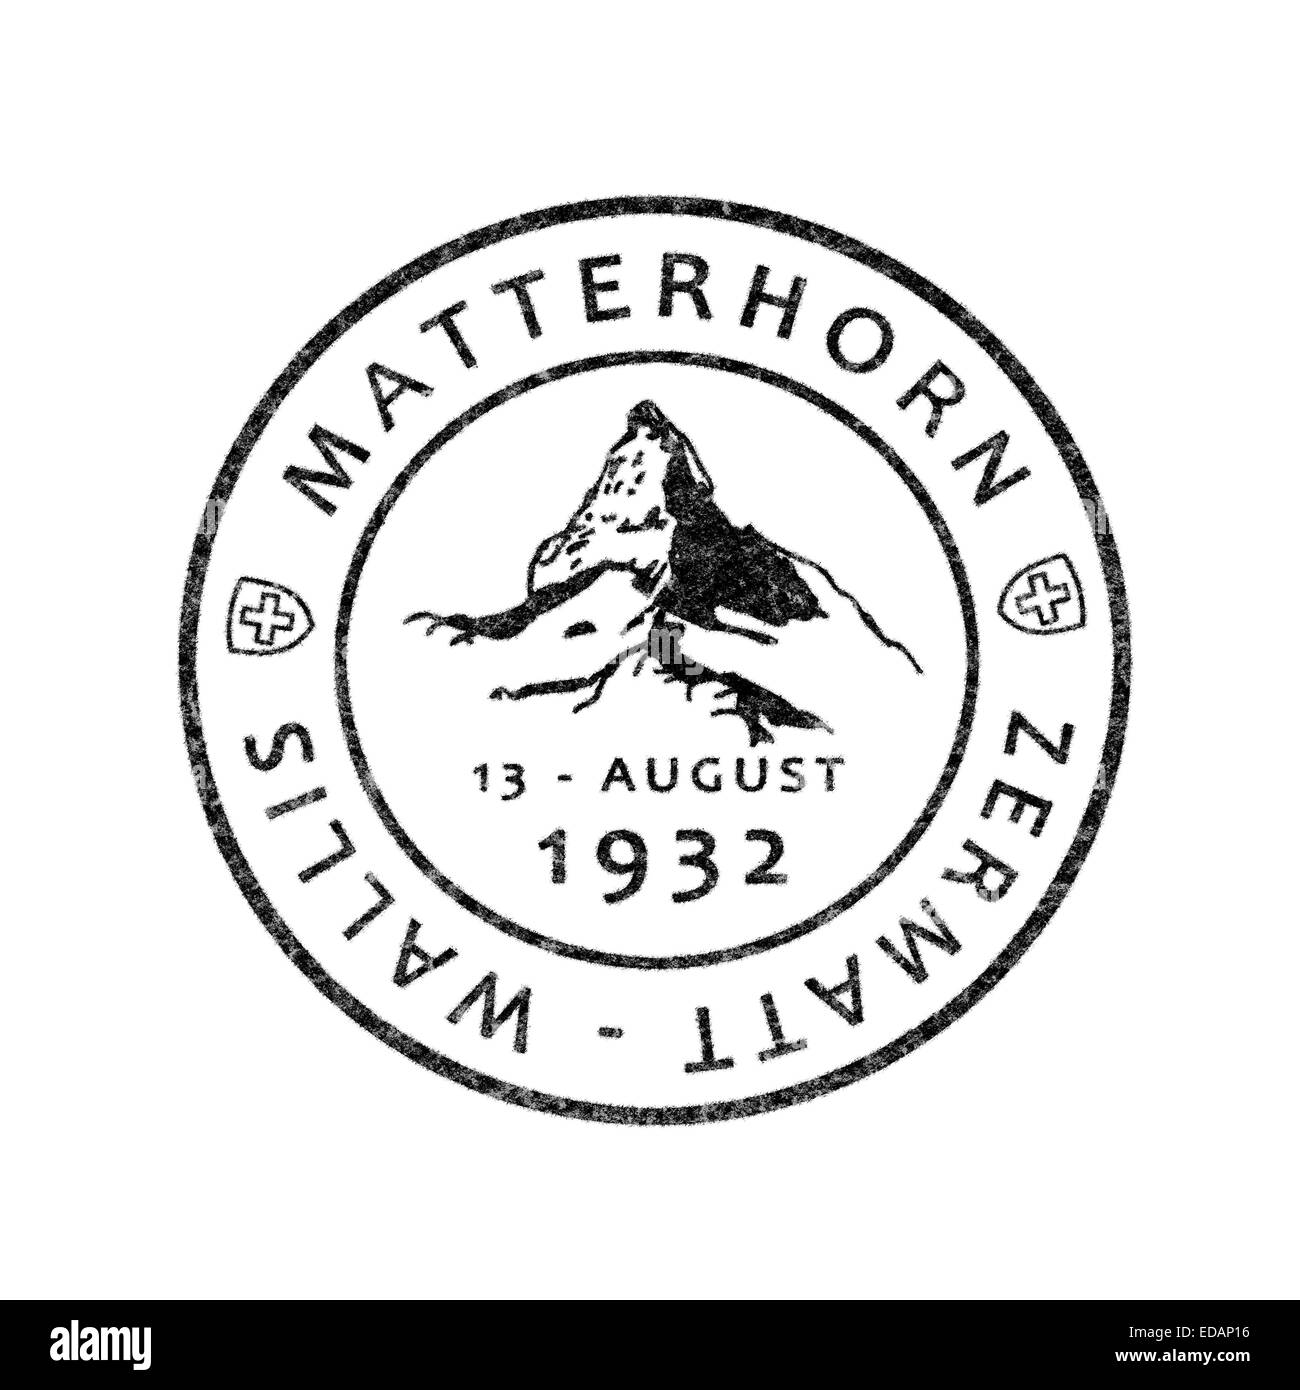 Old Swiss postmark Matterhorn, Zermatt, Valais Stock Photo